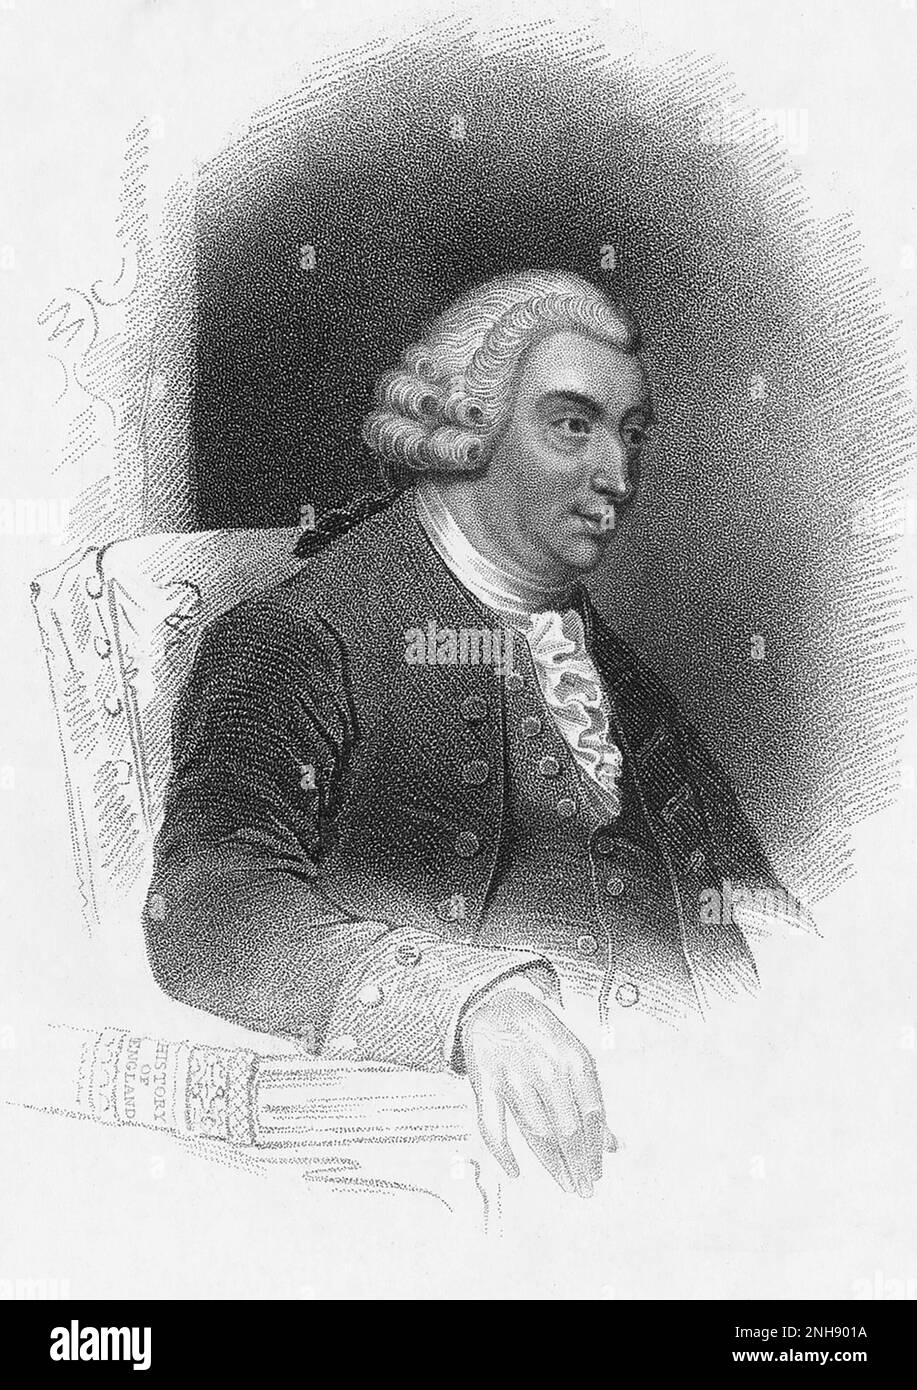 David Hume (1711-1776), philosophe, historien et économiste écossais des Lumières, mieux connu pour son système très influent d'empirisme philosophique, de scepticisme et de naturalisme. Gravure par John page (1746-1803), 1825. Banque D'Images